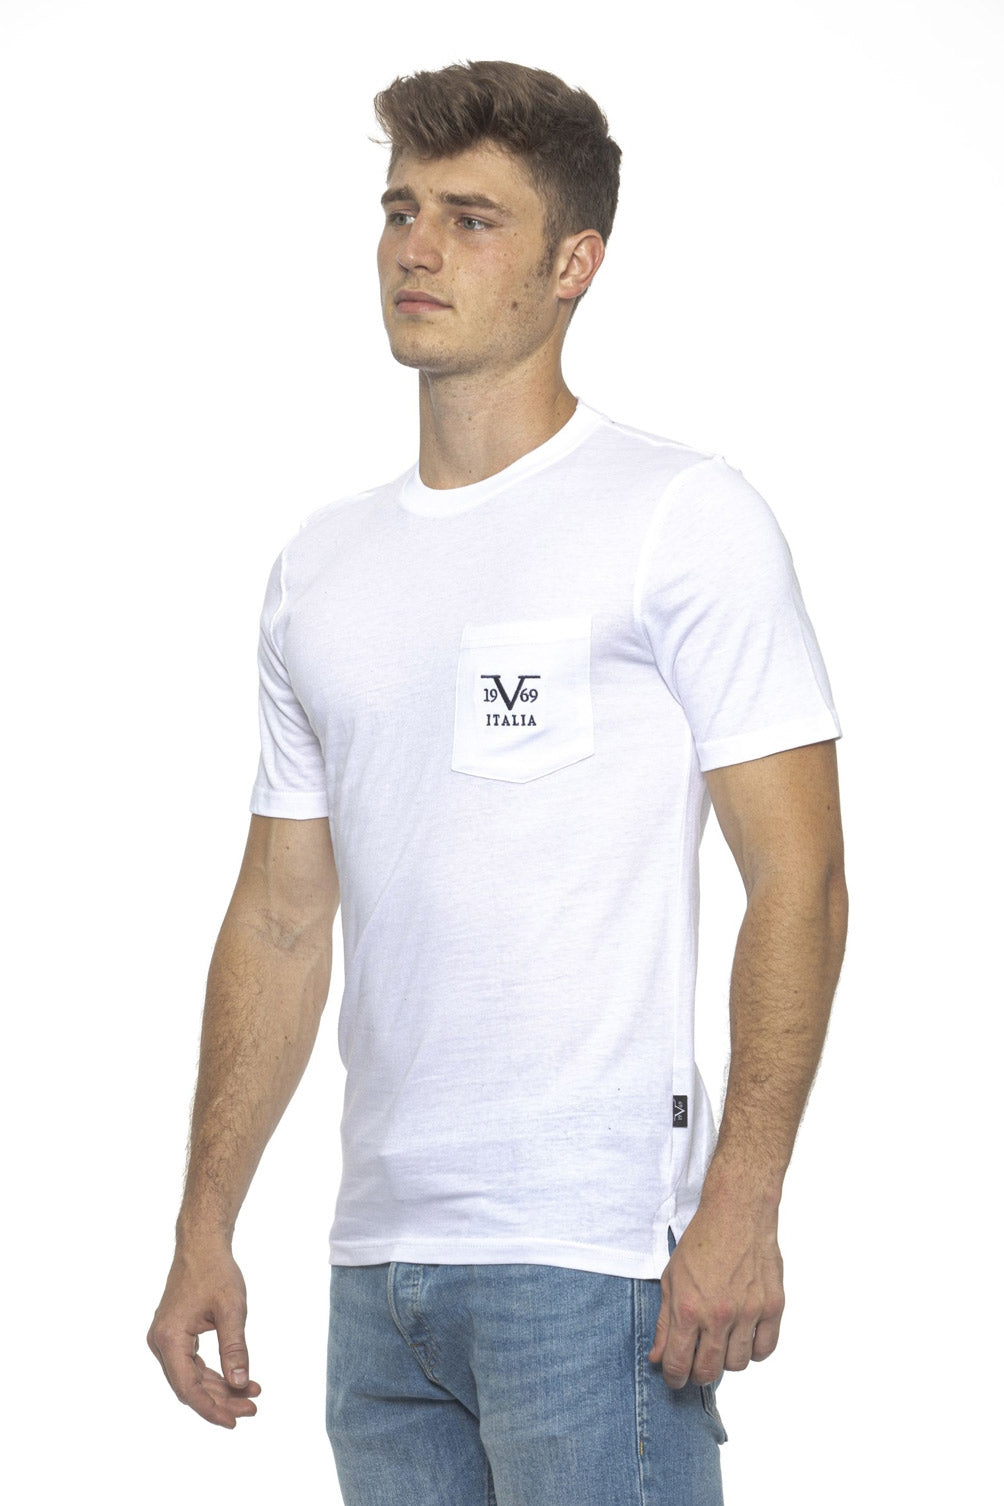 19V69 Italia Mens T-Shirt White IVAN WHITE